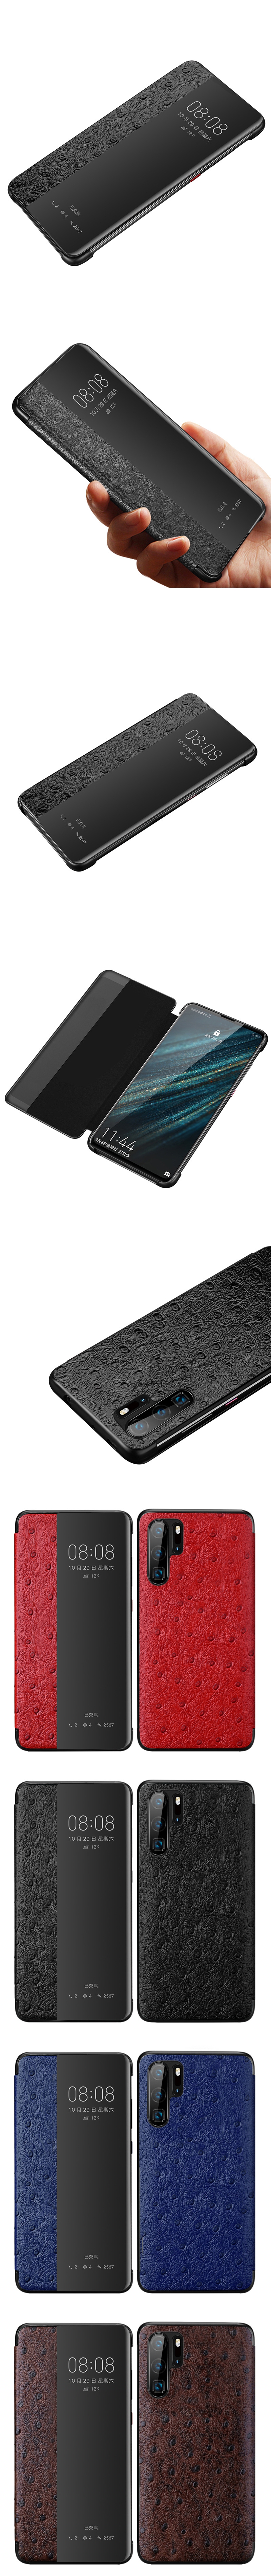 799-Huawei-真皮鴕鳥紋智能皮套來電顯示視窗保護套